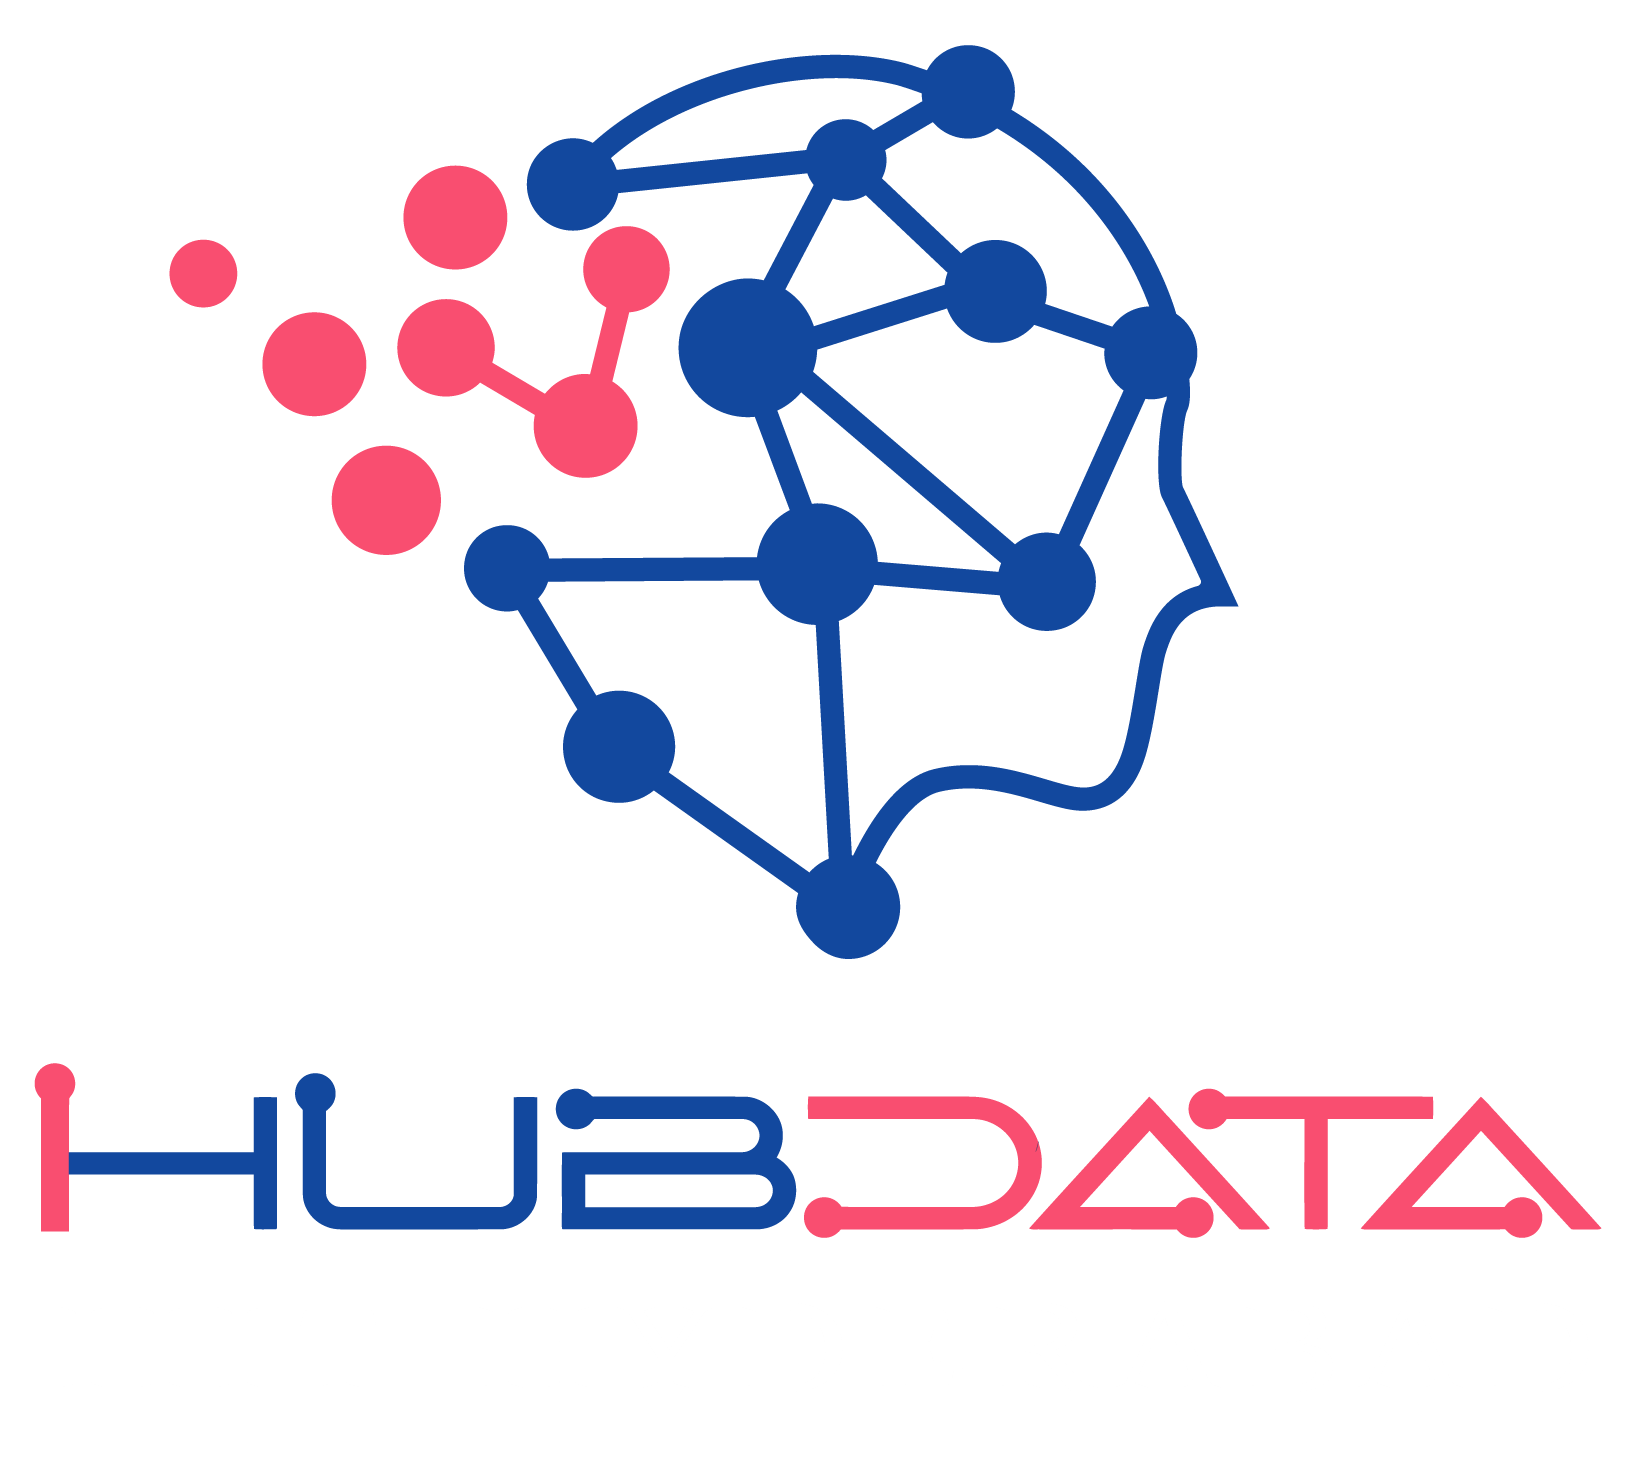 IIIT Hyderabad